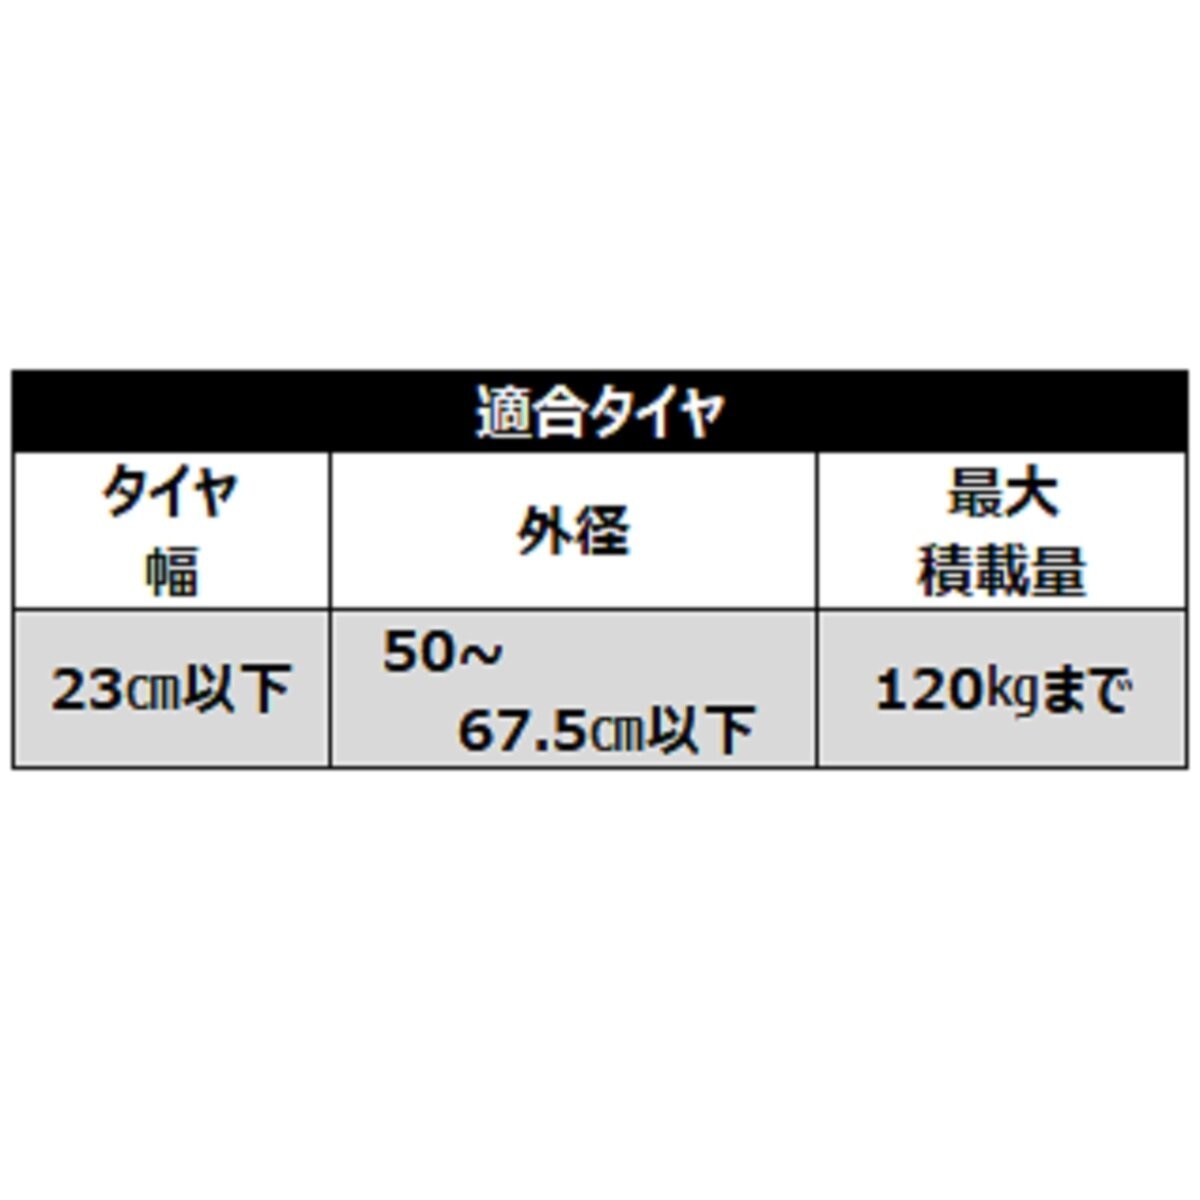 アイリスオーヤマ ステンレスタイヤラック 軽・普通車用 KSL-590 Costco Japan